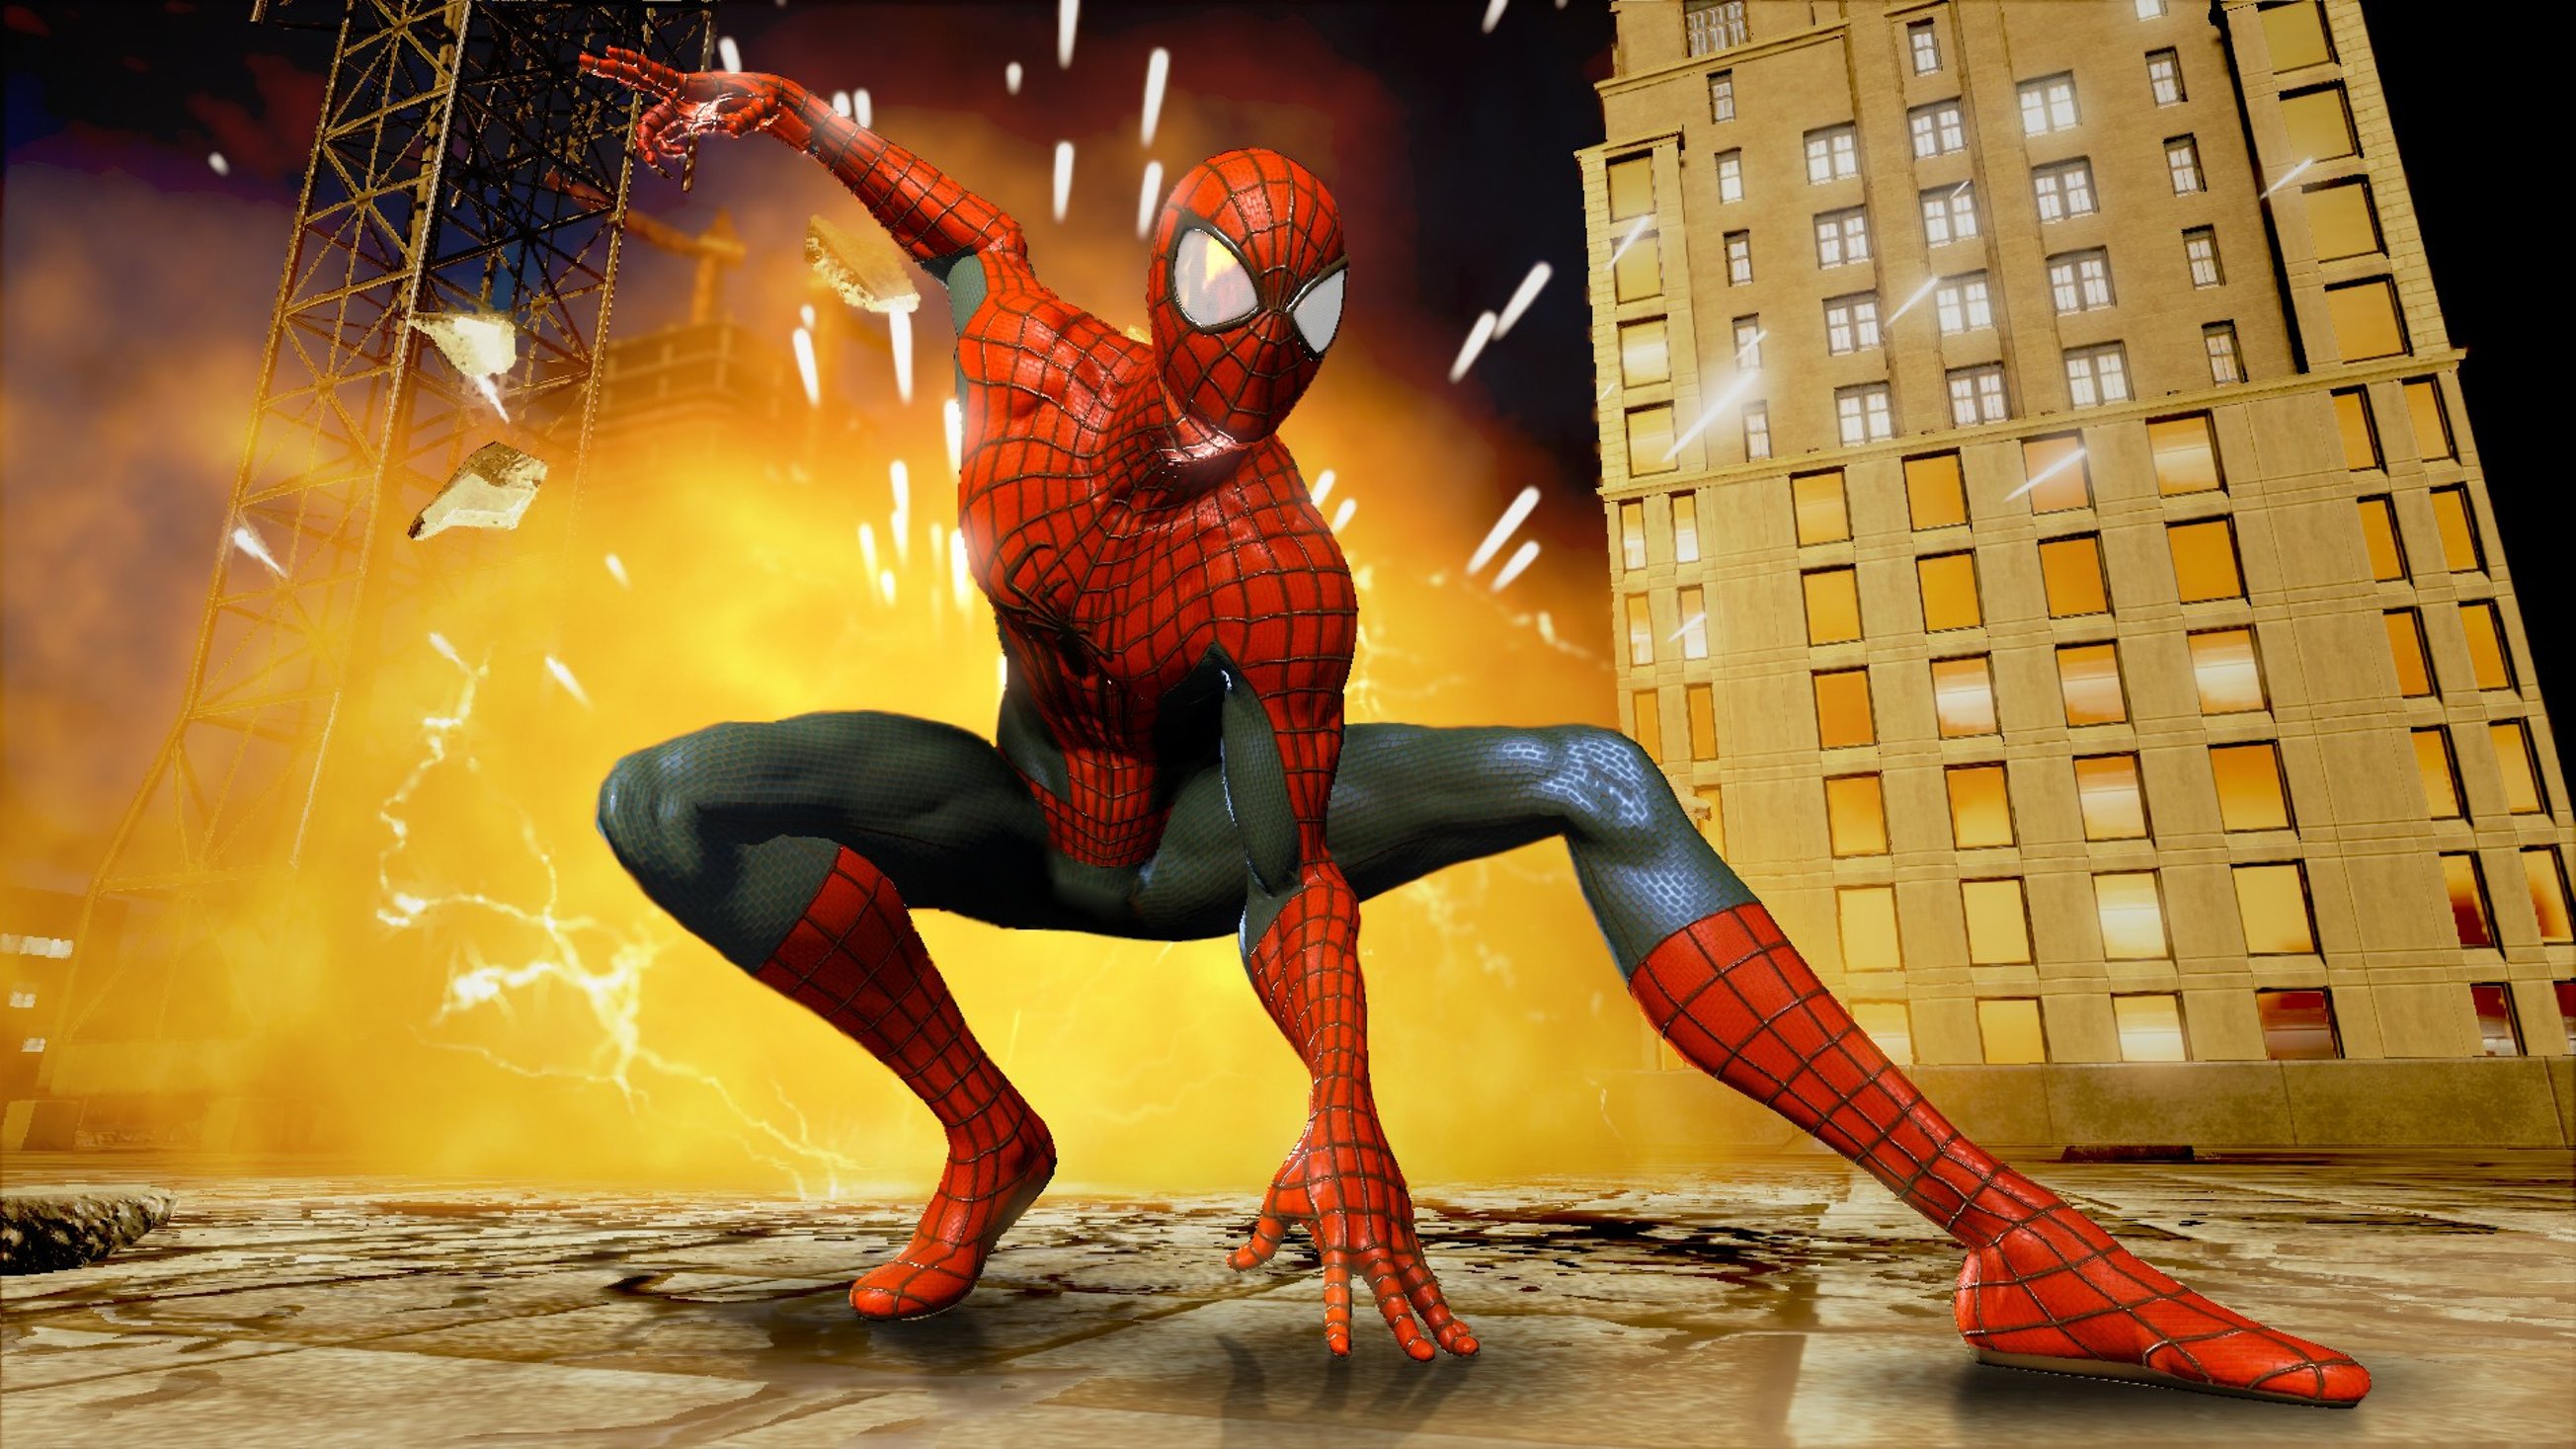 Спайдер ман 2. Spider-man 2. Амазинг Спайдер Мэн 2. The amazing Spider-man игра 2014. The amazing Spider-man 2 (игра, 2014).